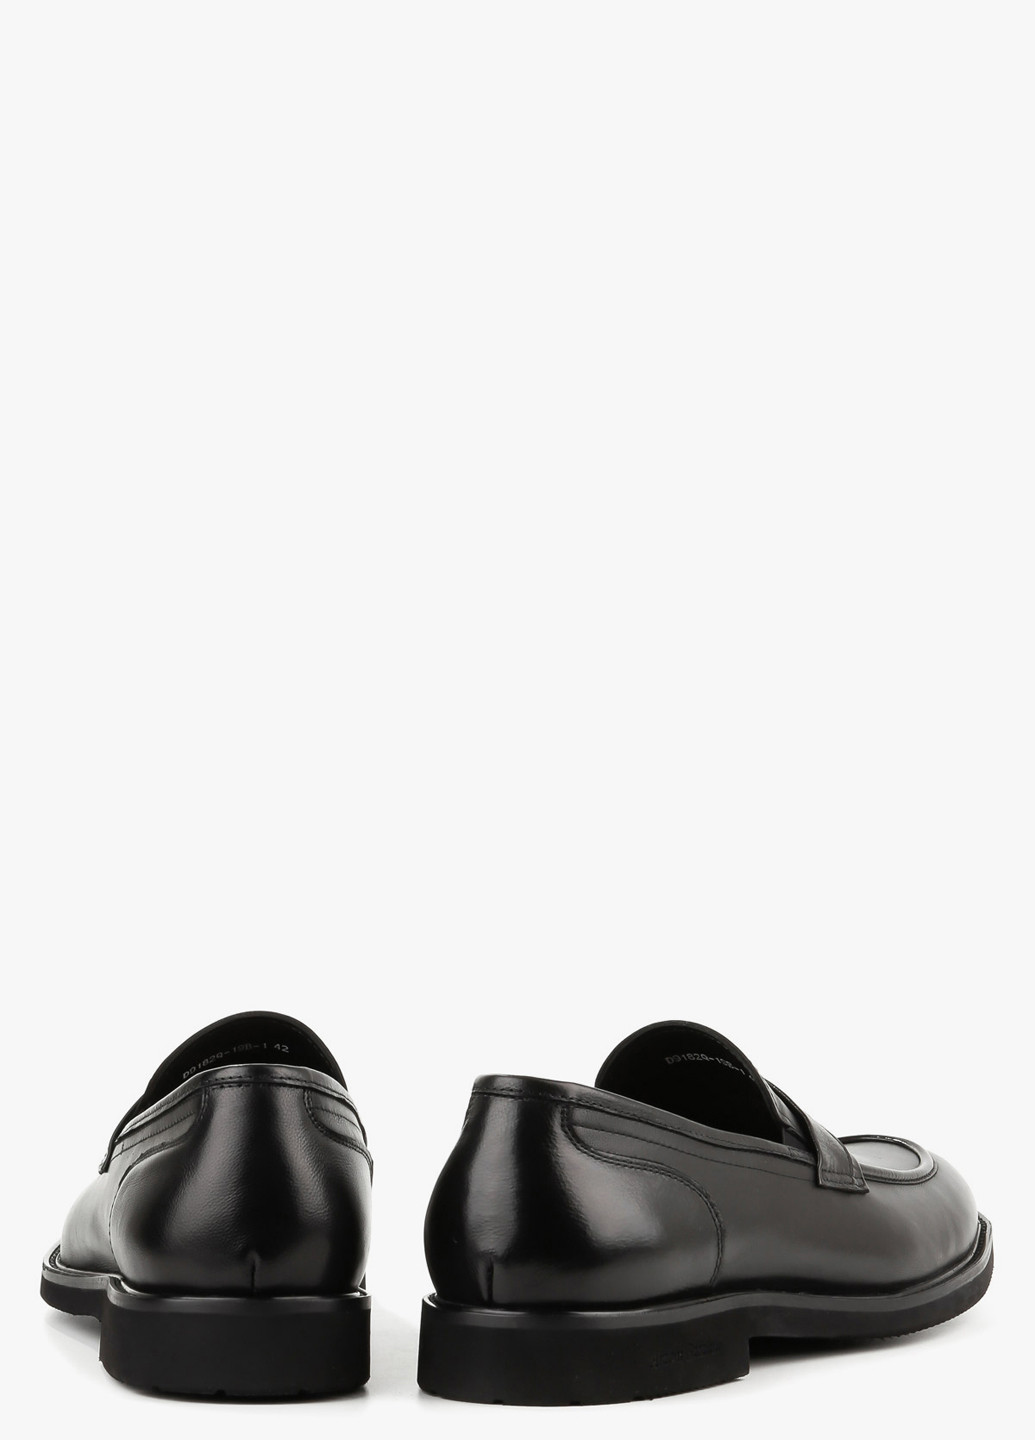 Черные классические туфли Arzoni Bazalini без шнурков